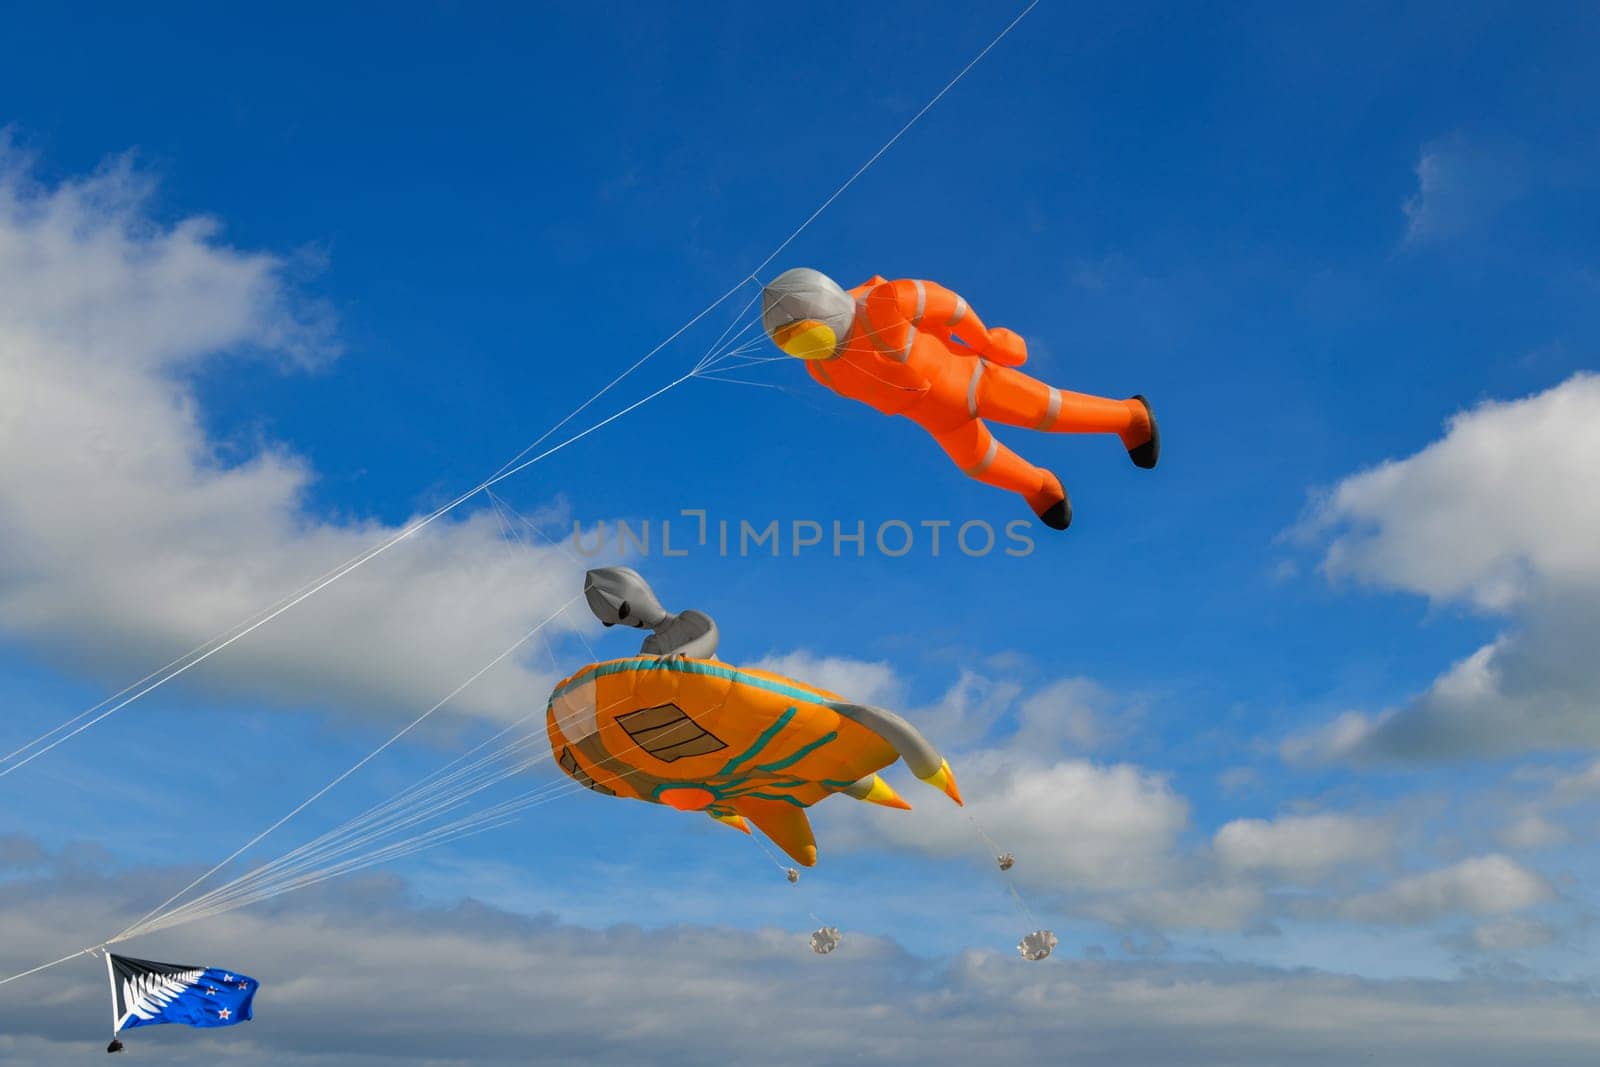 Kite festival. Kites in the sky in the Atlantic ocean